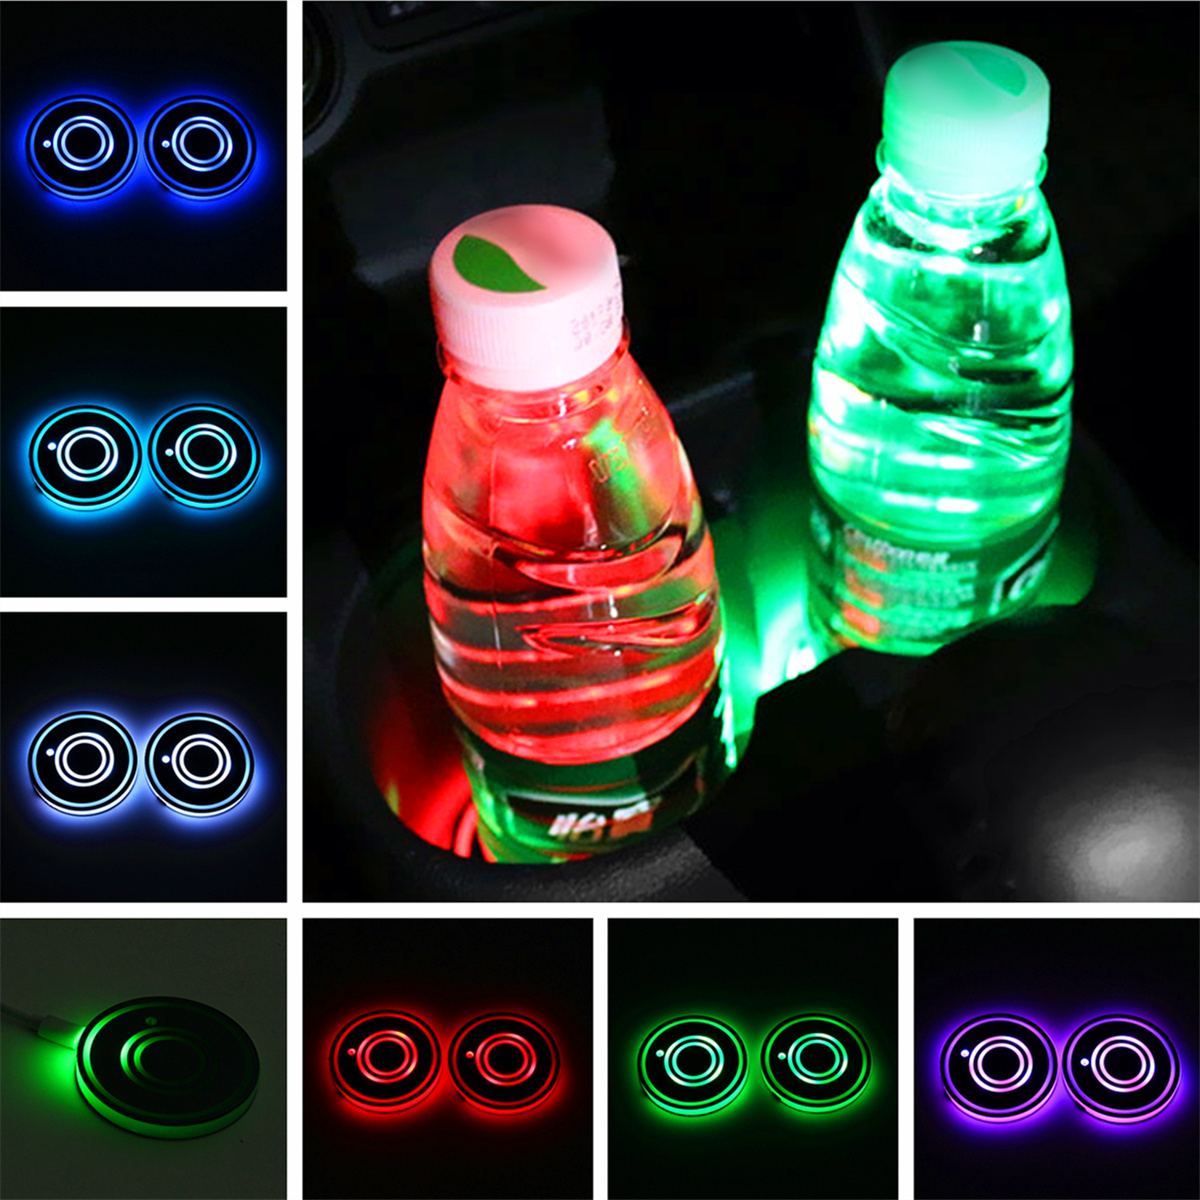 

Универсальный 7 Цветов LED Авто Держатель Чашки Pad Бутылочный Коврик Авто Интерьер Атмосфера Огни USB Зарядка